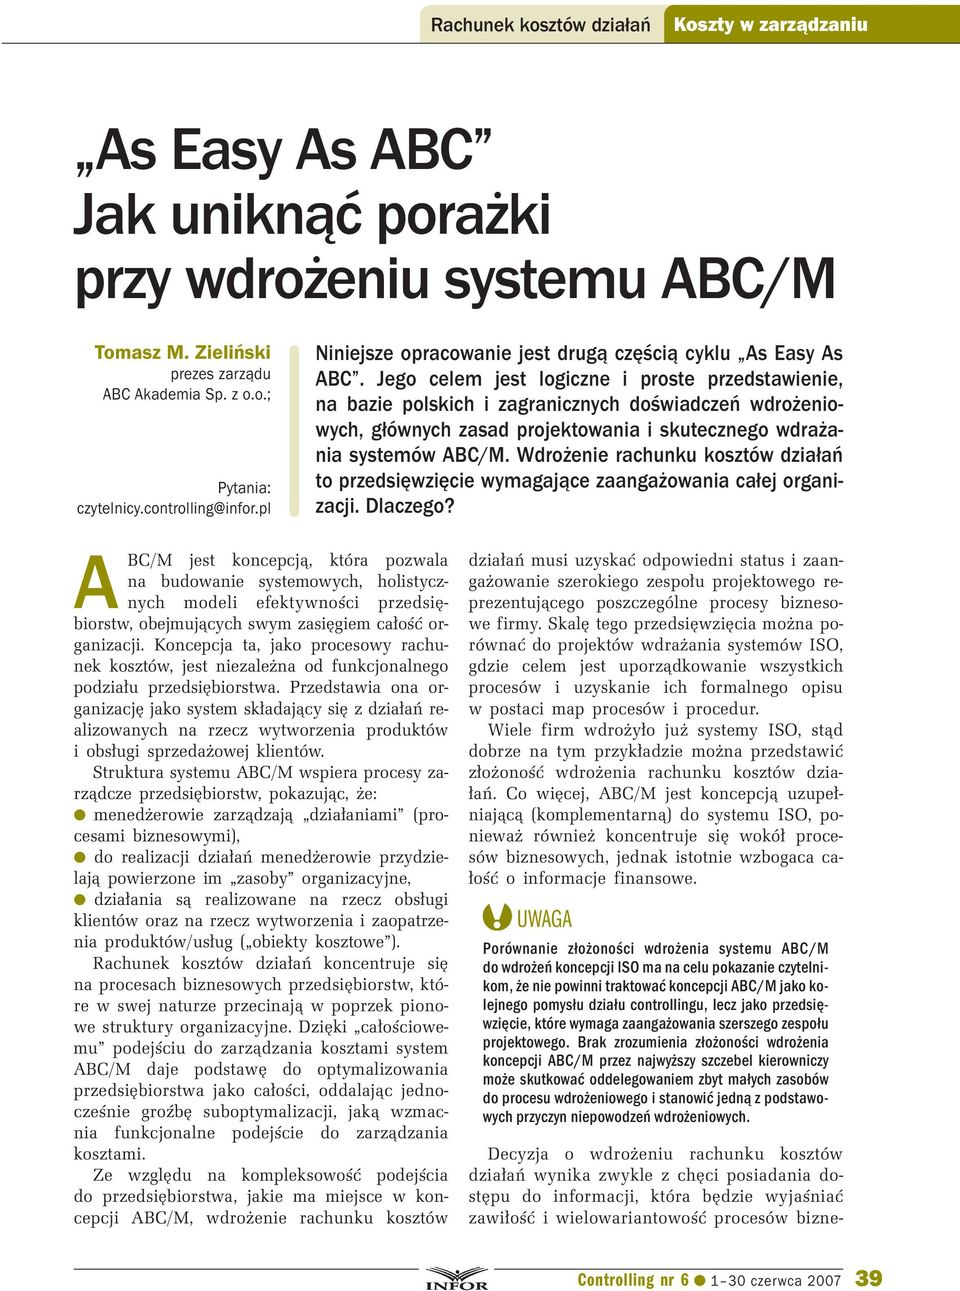 Jego celem jest logiczne i proste przedstawienie, na bazie polskich i zagranicznych doświadczeń wdrożeniowych, głównych zasad projektowania i skutecznego wdrażania systemów ABC/M.